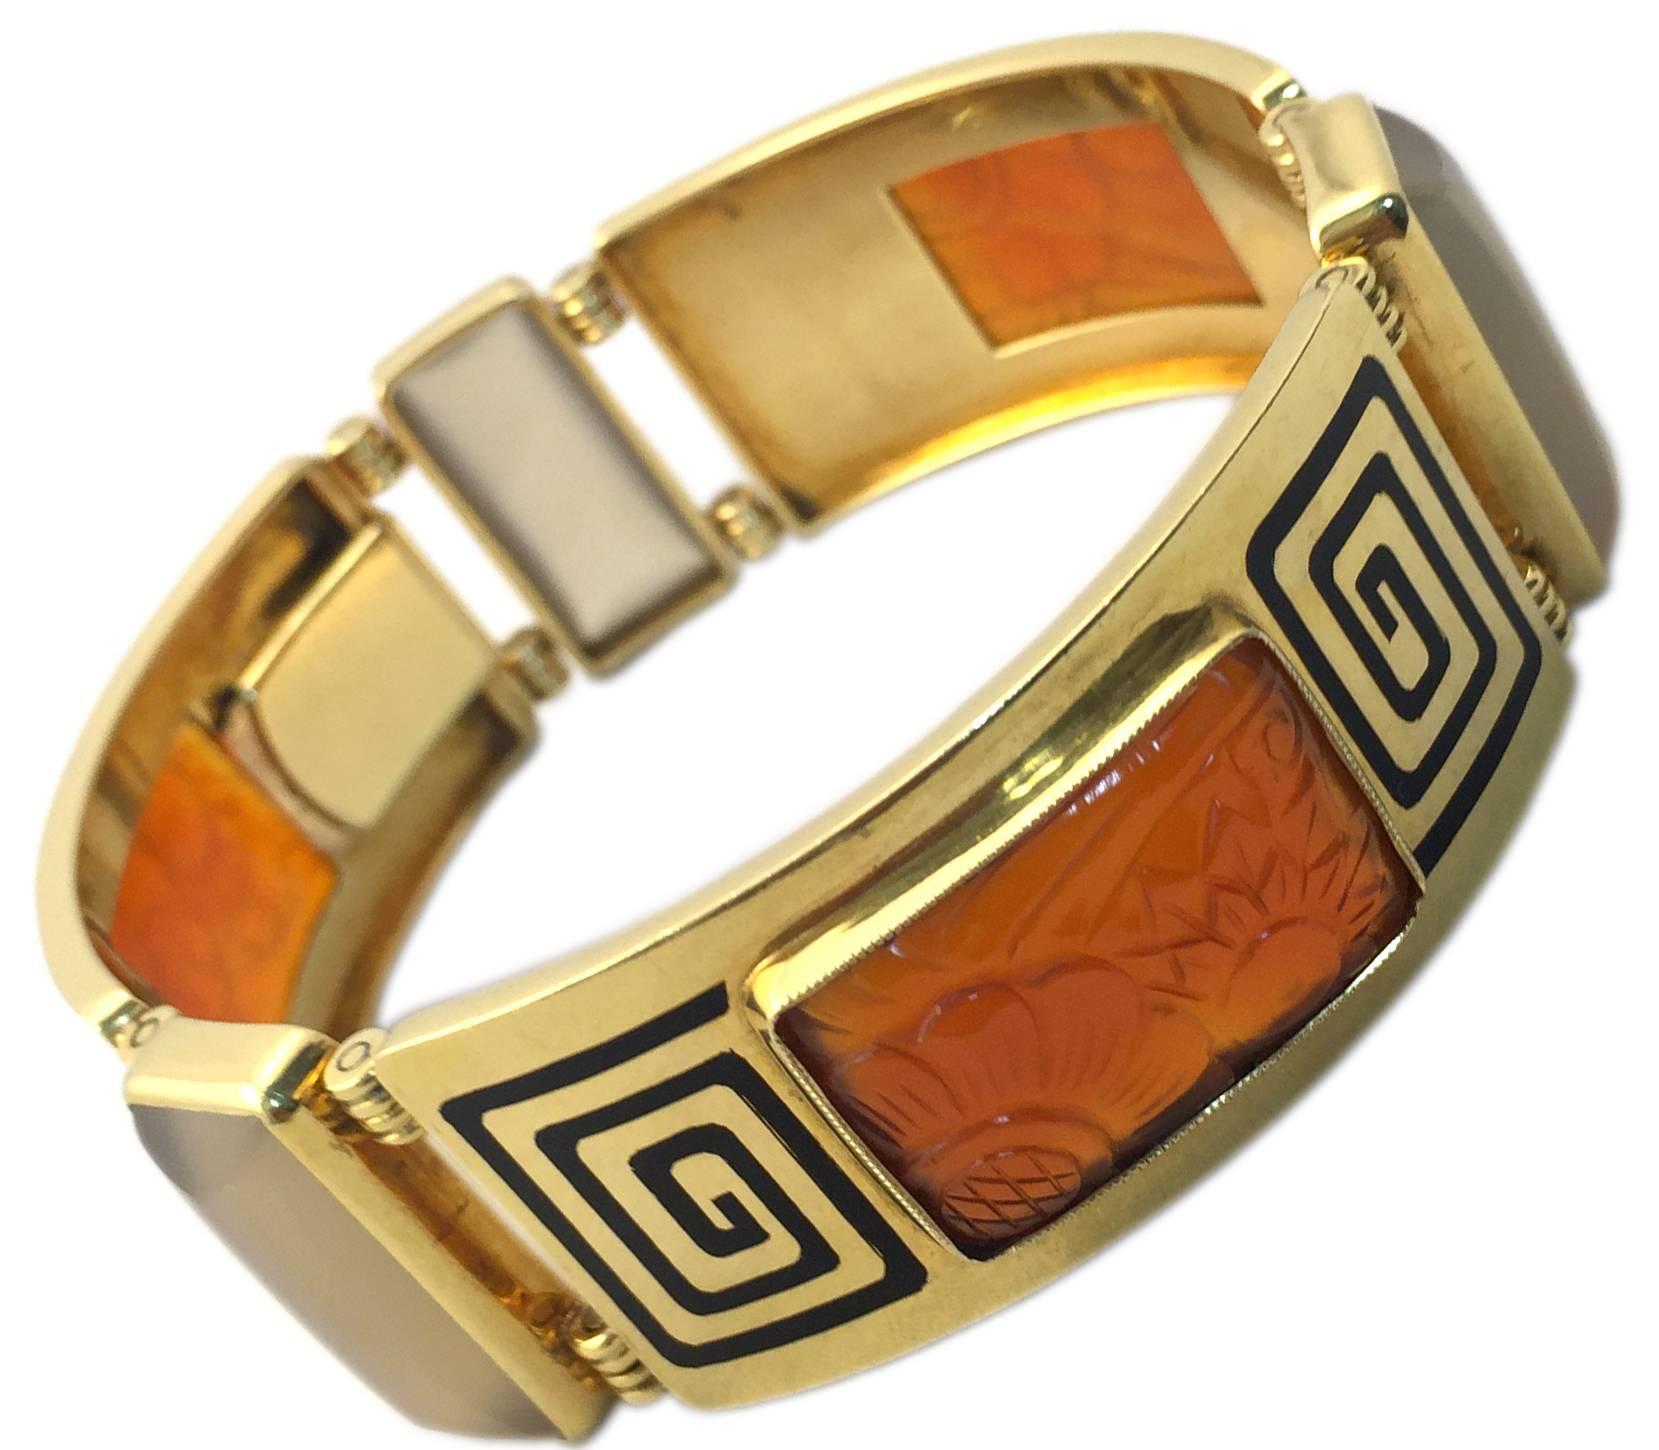 Ein prächtiges Art-Déco-Armband mit einer ungewöhnlichen Kombination aus geschnitzten geometrischen Mustern aus Karneol, Achat und schwarzer Emaille auf 18-karätigem Gelbgold. Hergestellt in Frankreich, um 1925.